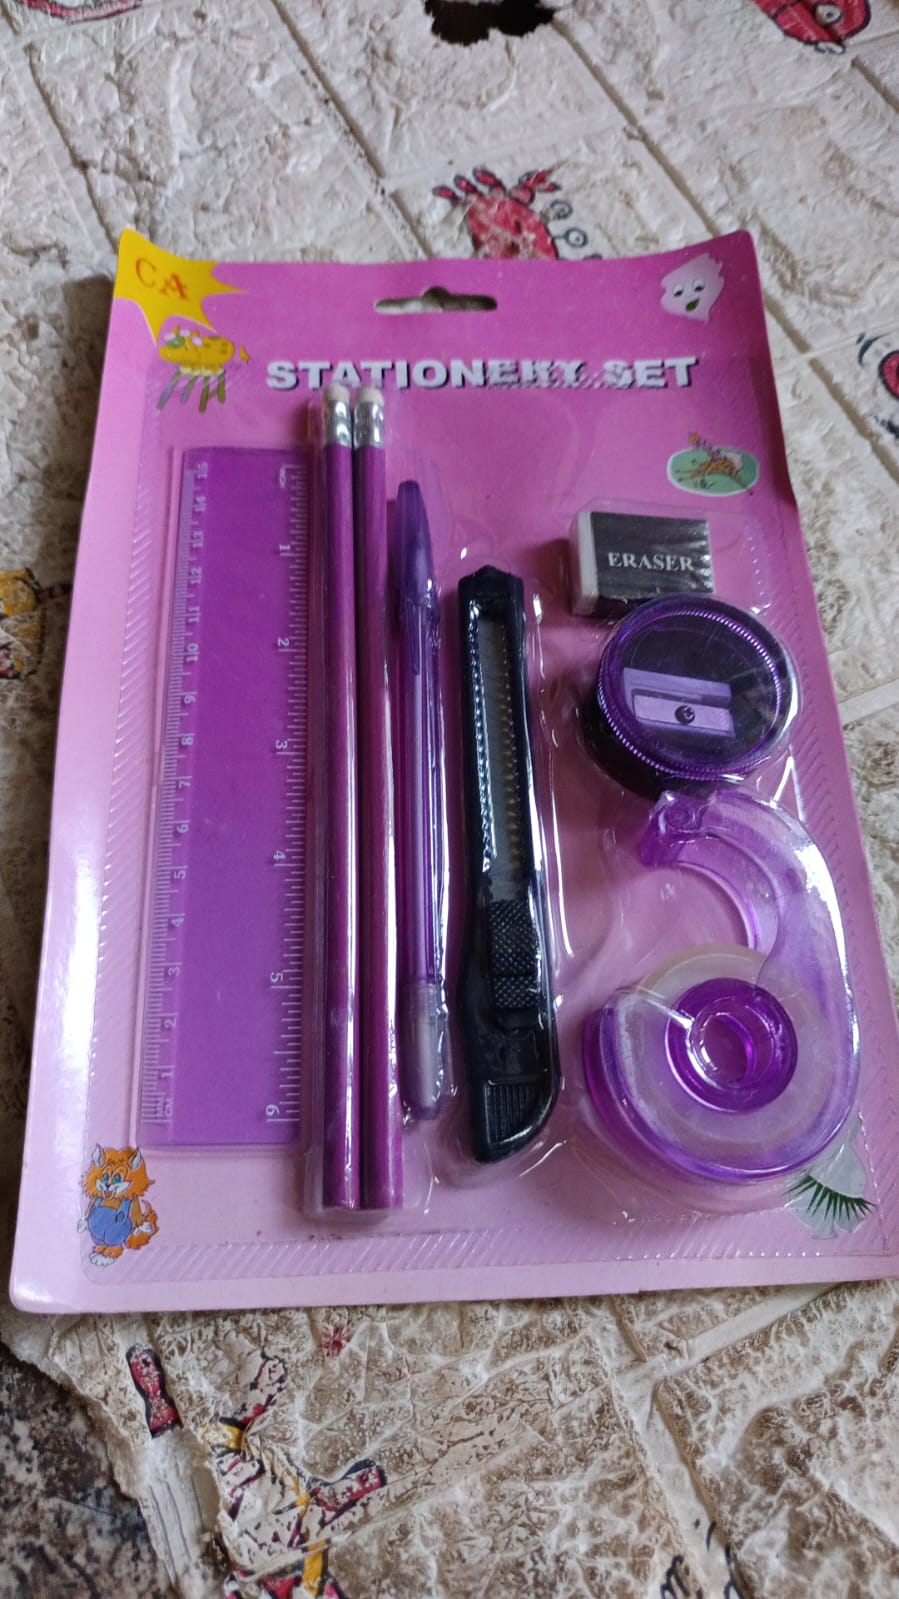 17503 Stationary Sets For kids (8 pcs set), Educational item And gift set for kids Set includes 2 pencil, ruler, sharpener, eraser, cutter, tap and pen.